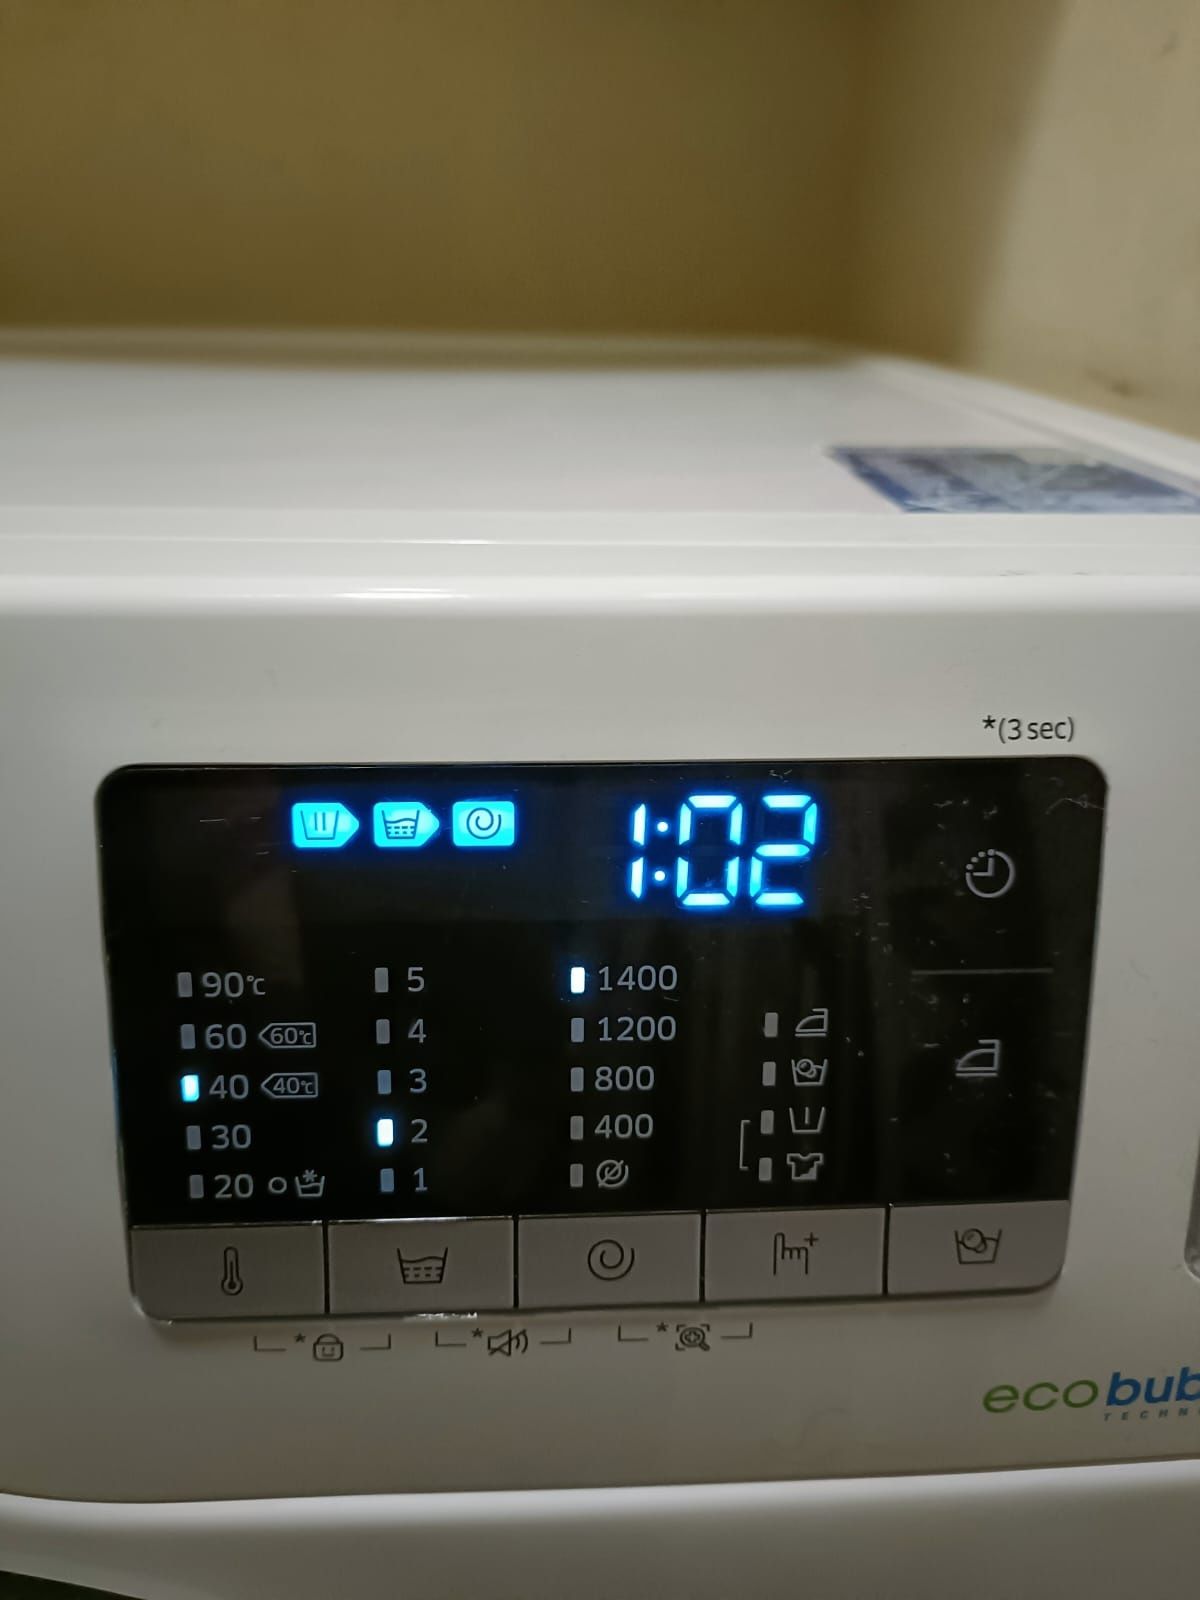 Máquina de lavar roupa Samsung Ecobubble 7 kg -eficiência energética A